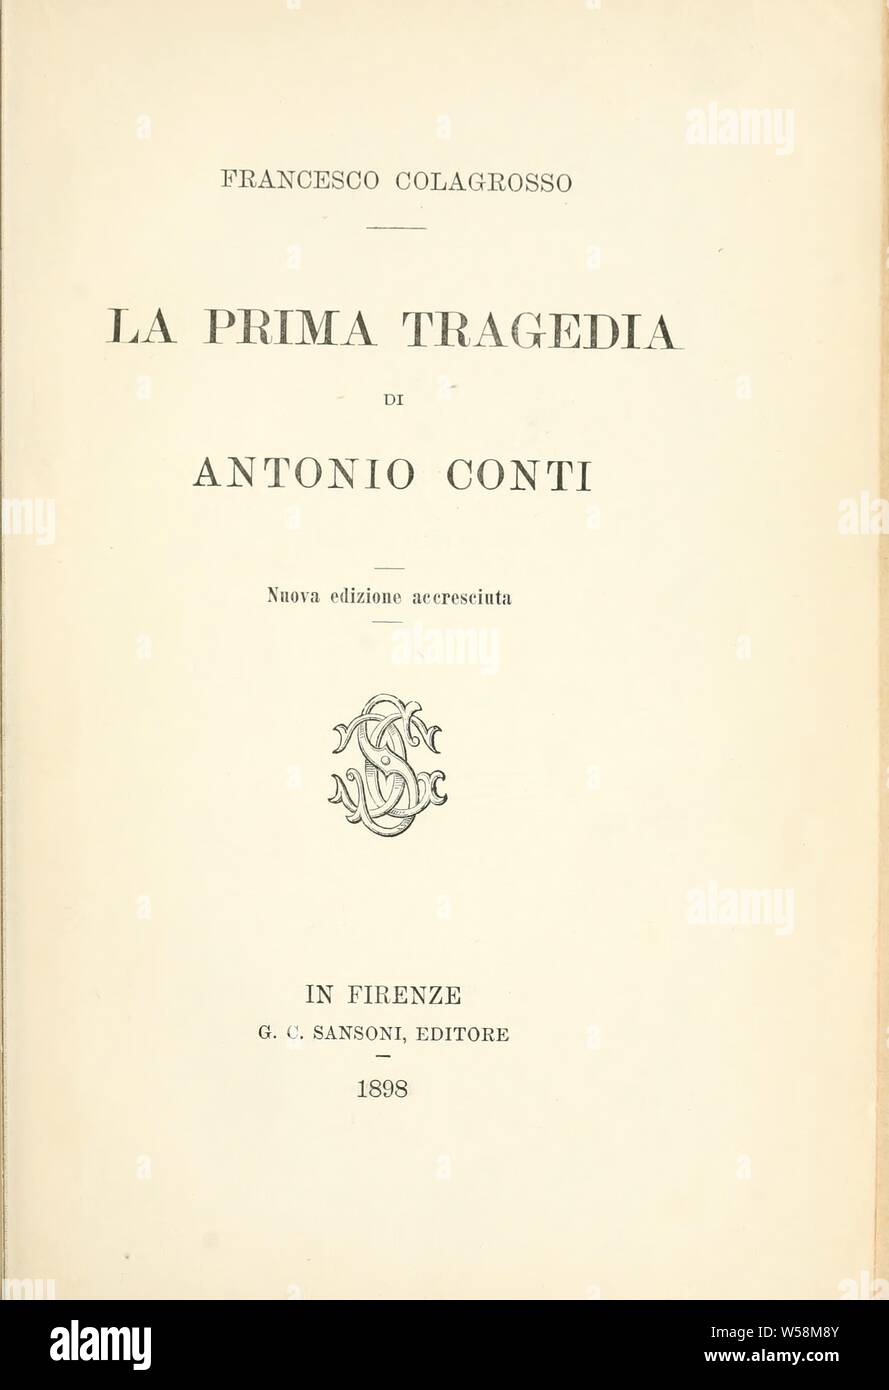 La prima tragedia di Antonio Conti : Colagrosso, Francesco, 1858-1911 Stock Photo